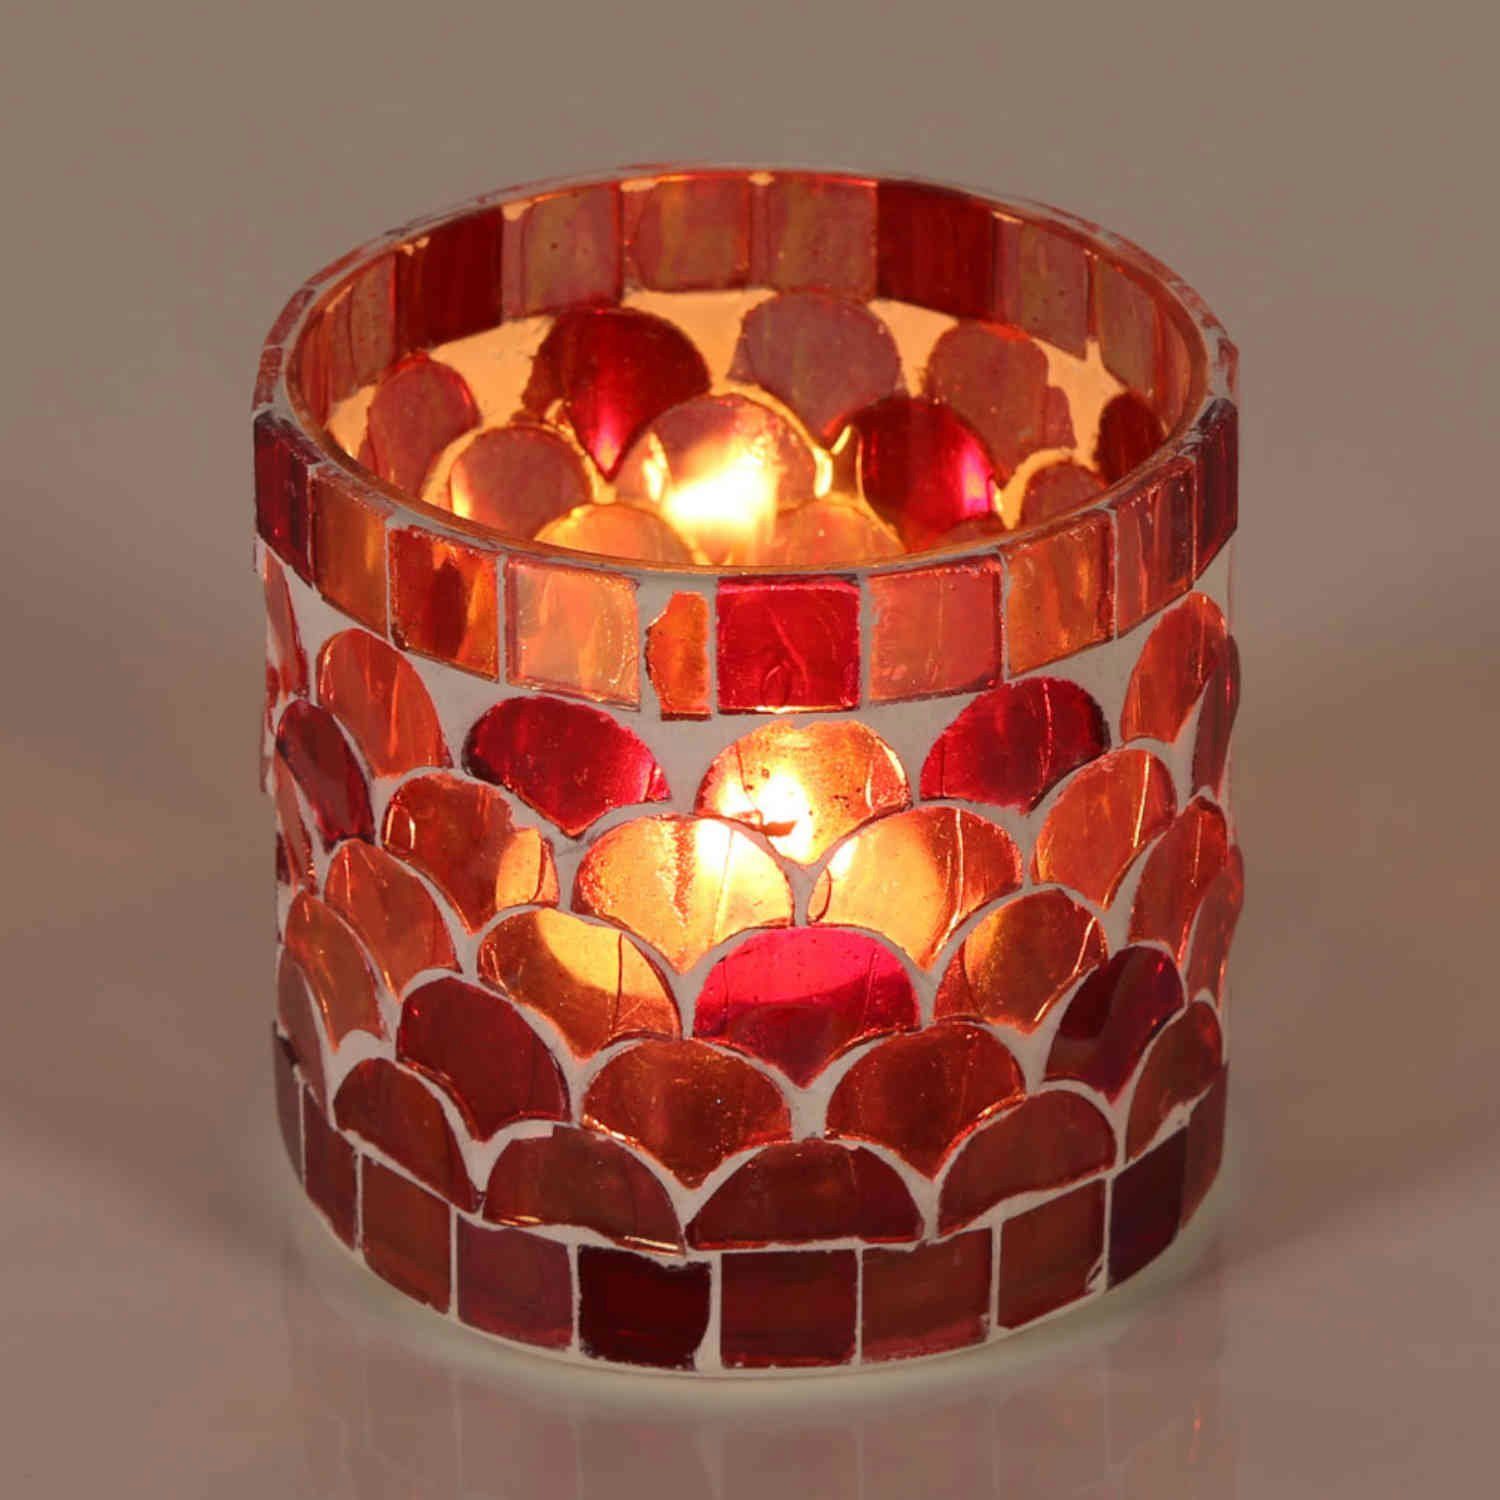 Casa Moro Windlicht Orientalisches Mosaik Windlicht Athen Rot aus Glas handgefertigt (Boho Chic Teelichthalter Kerzenständer Kerzenhalter, Glaswindlicht in den Größen S und M oder als 2er Set bestellbar), Kunsthandwerk pur für einfach schöner wohnen